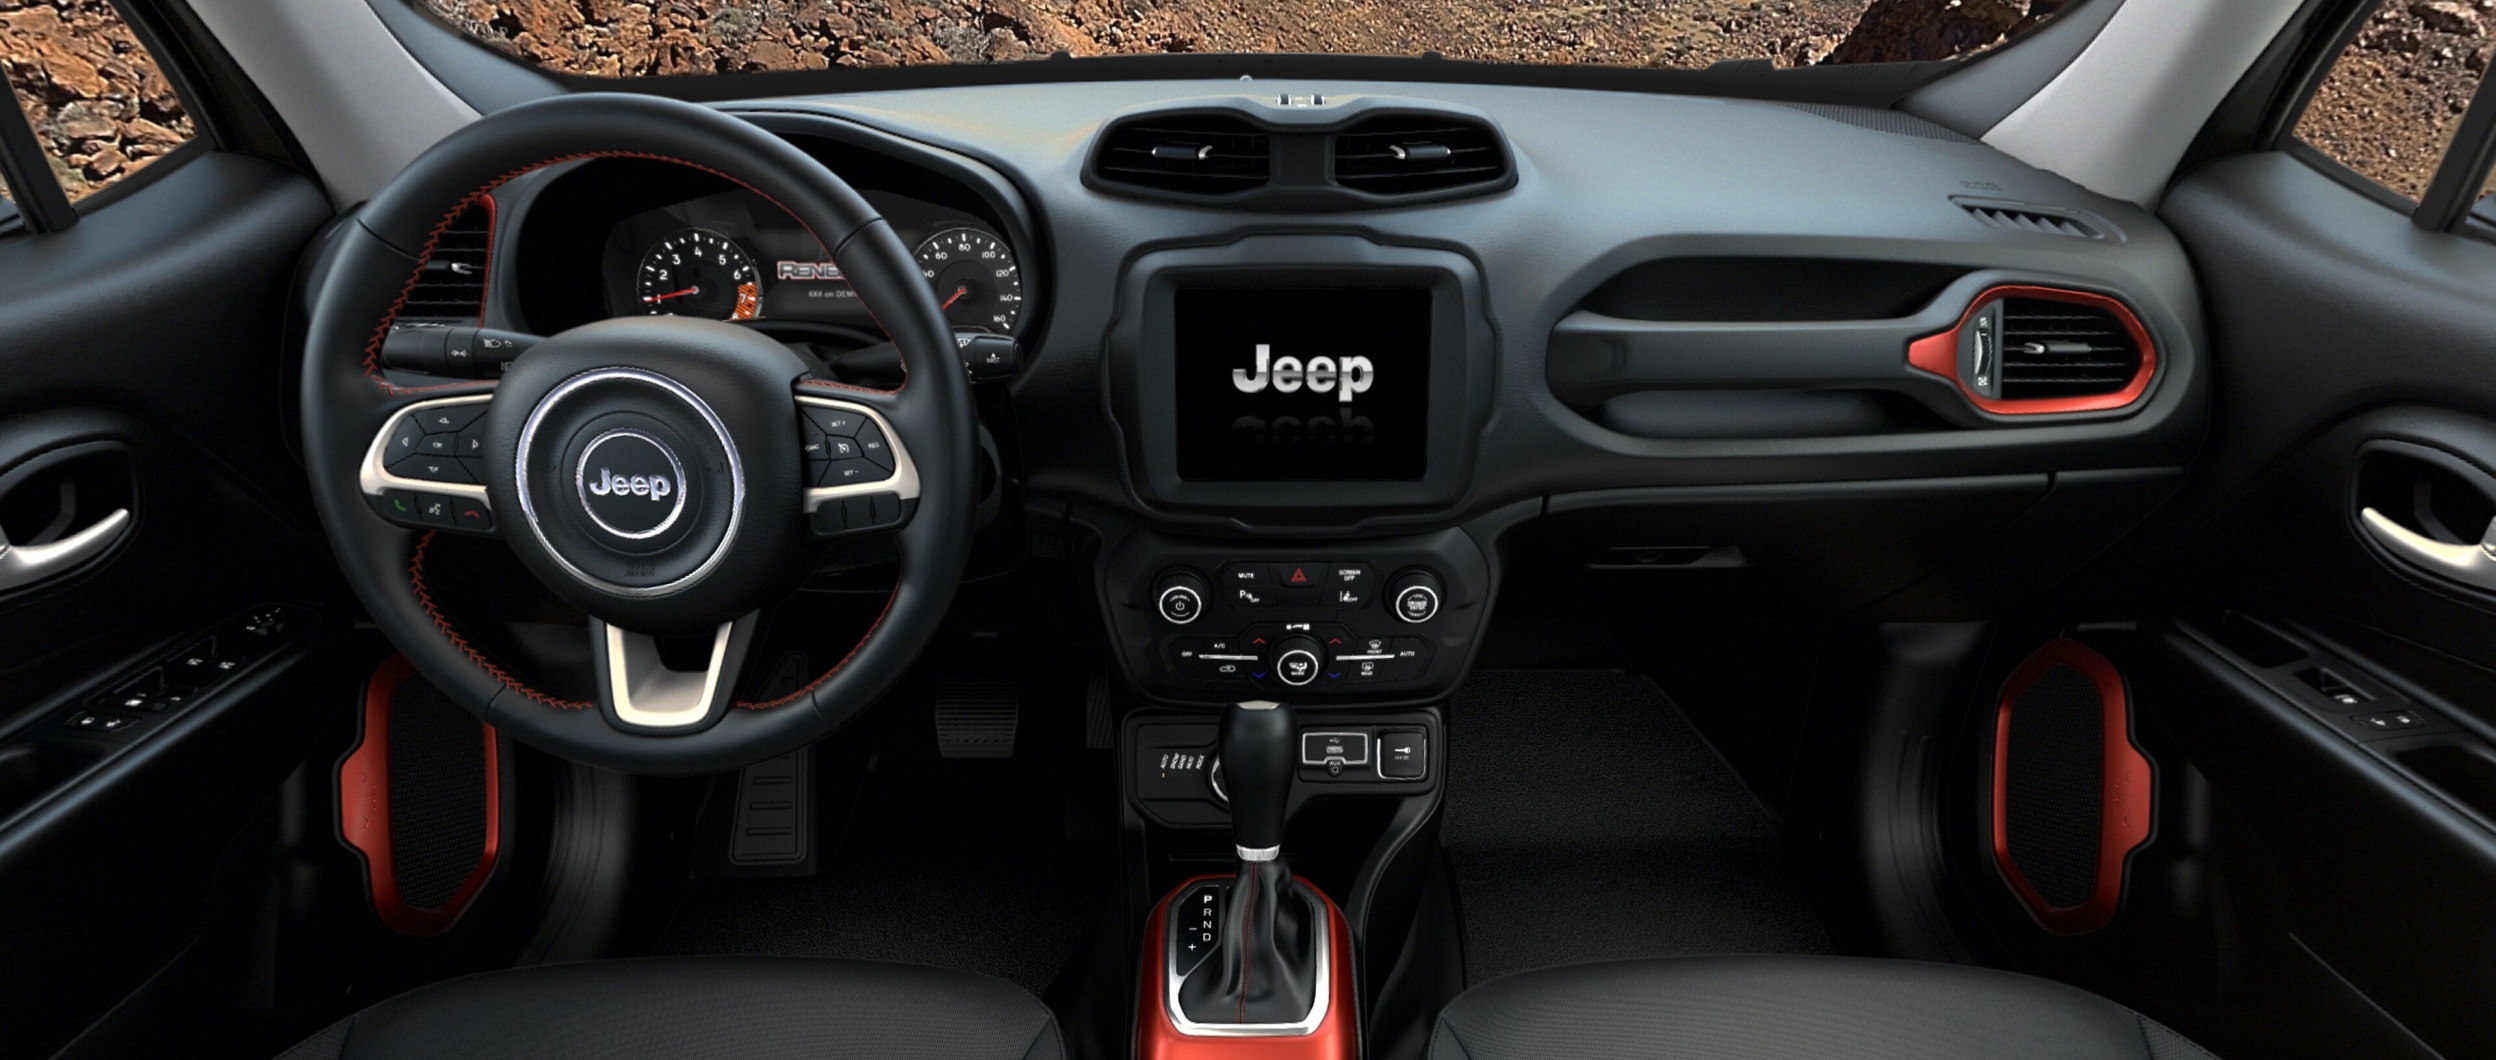 2021 Jeep Renegade Interior